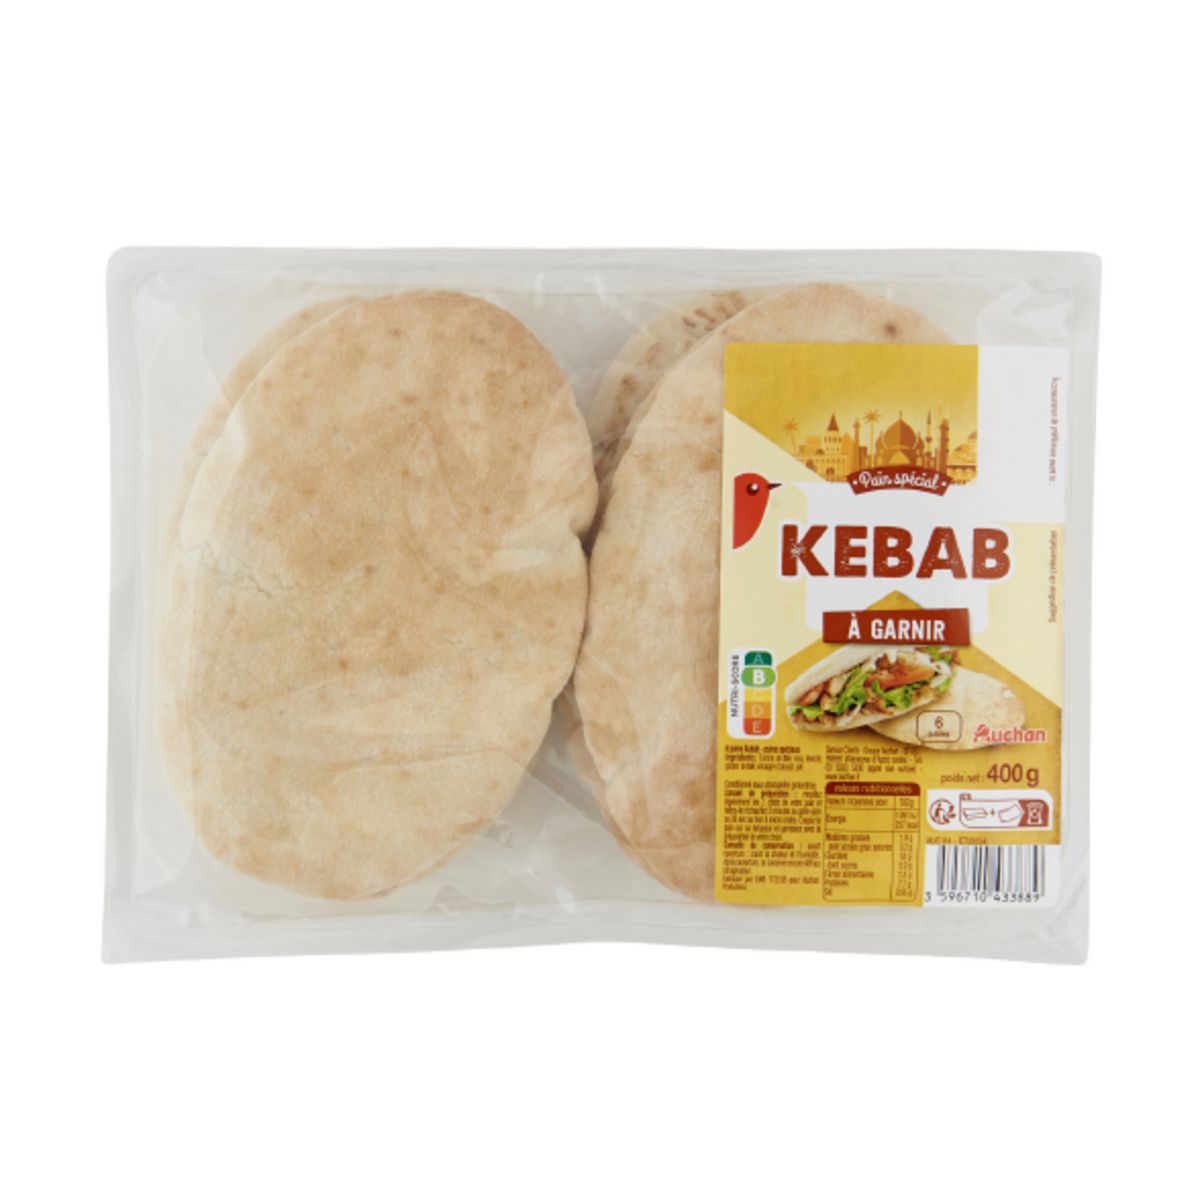 AUCHAN Pain Kebab à garnir 6 pièces 400g